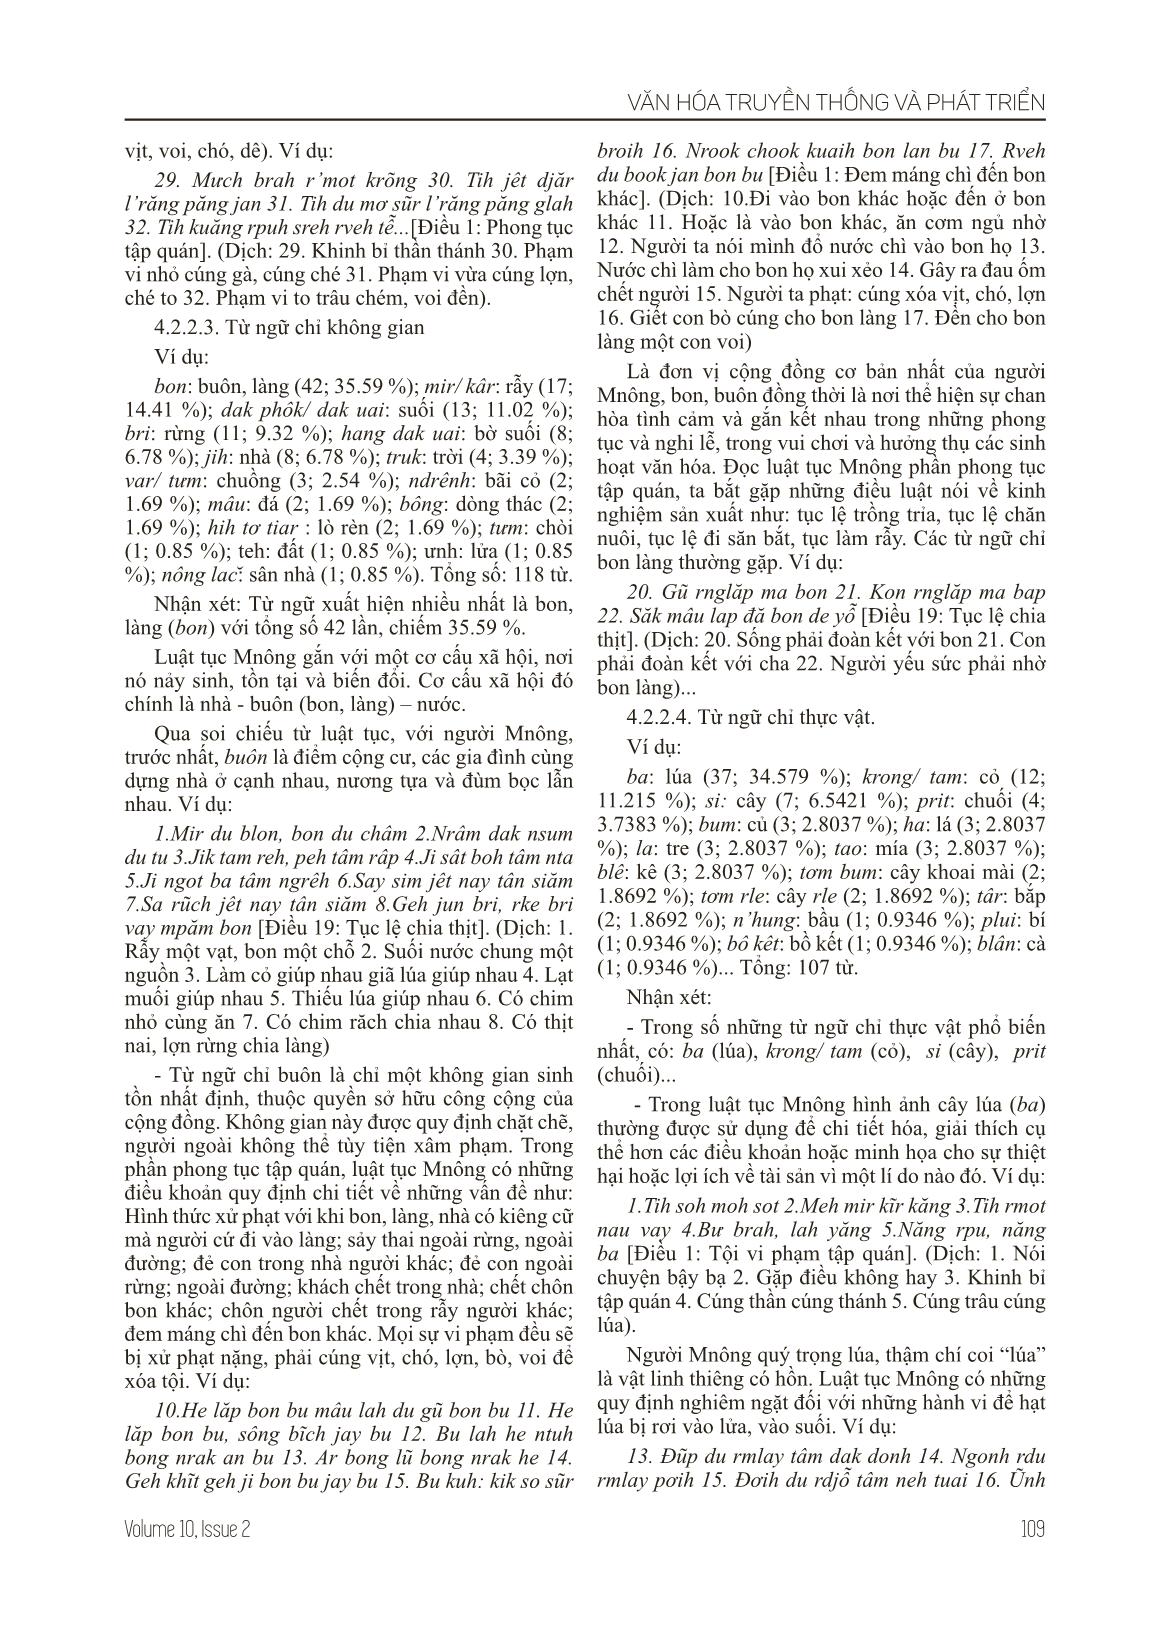 Đặc điểm ngôn ngữ trong luật tục Mnông (Nghiên cứu trường hợp: chương IV - Về phong tục tập quán) trang 6